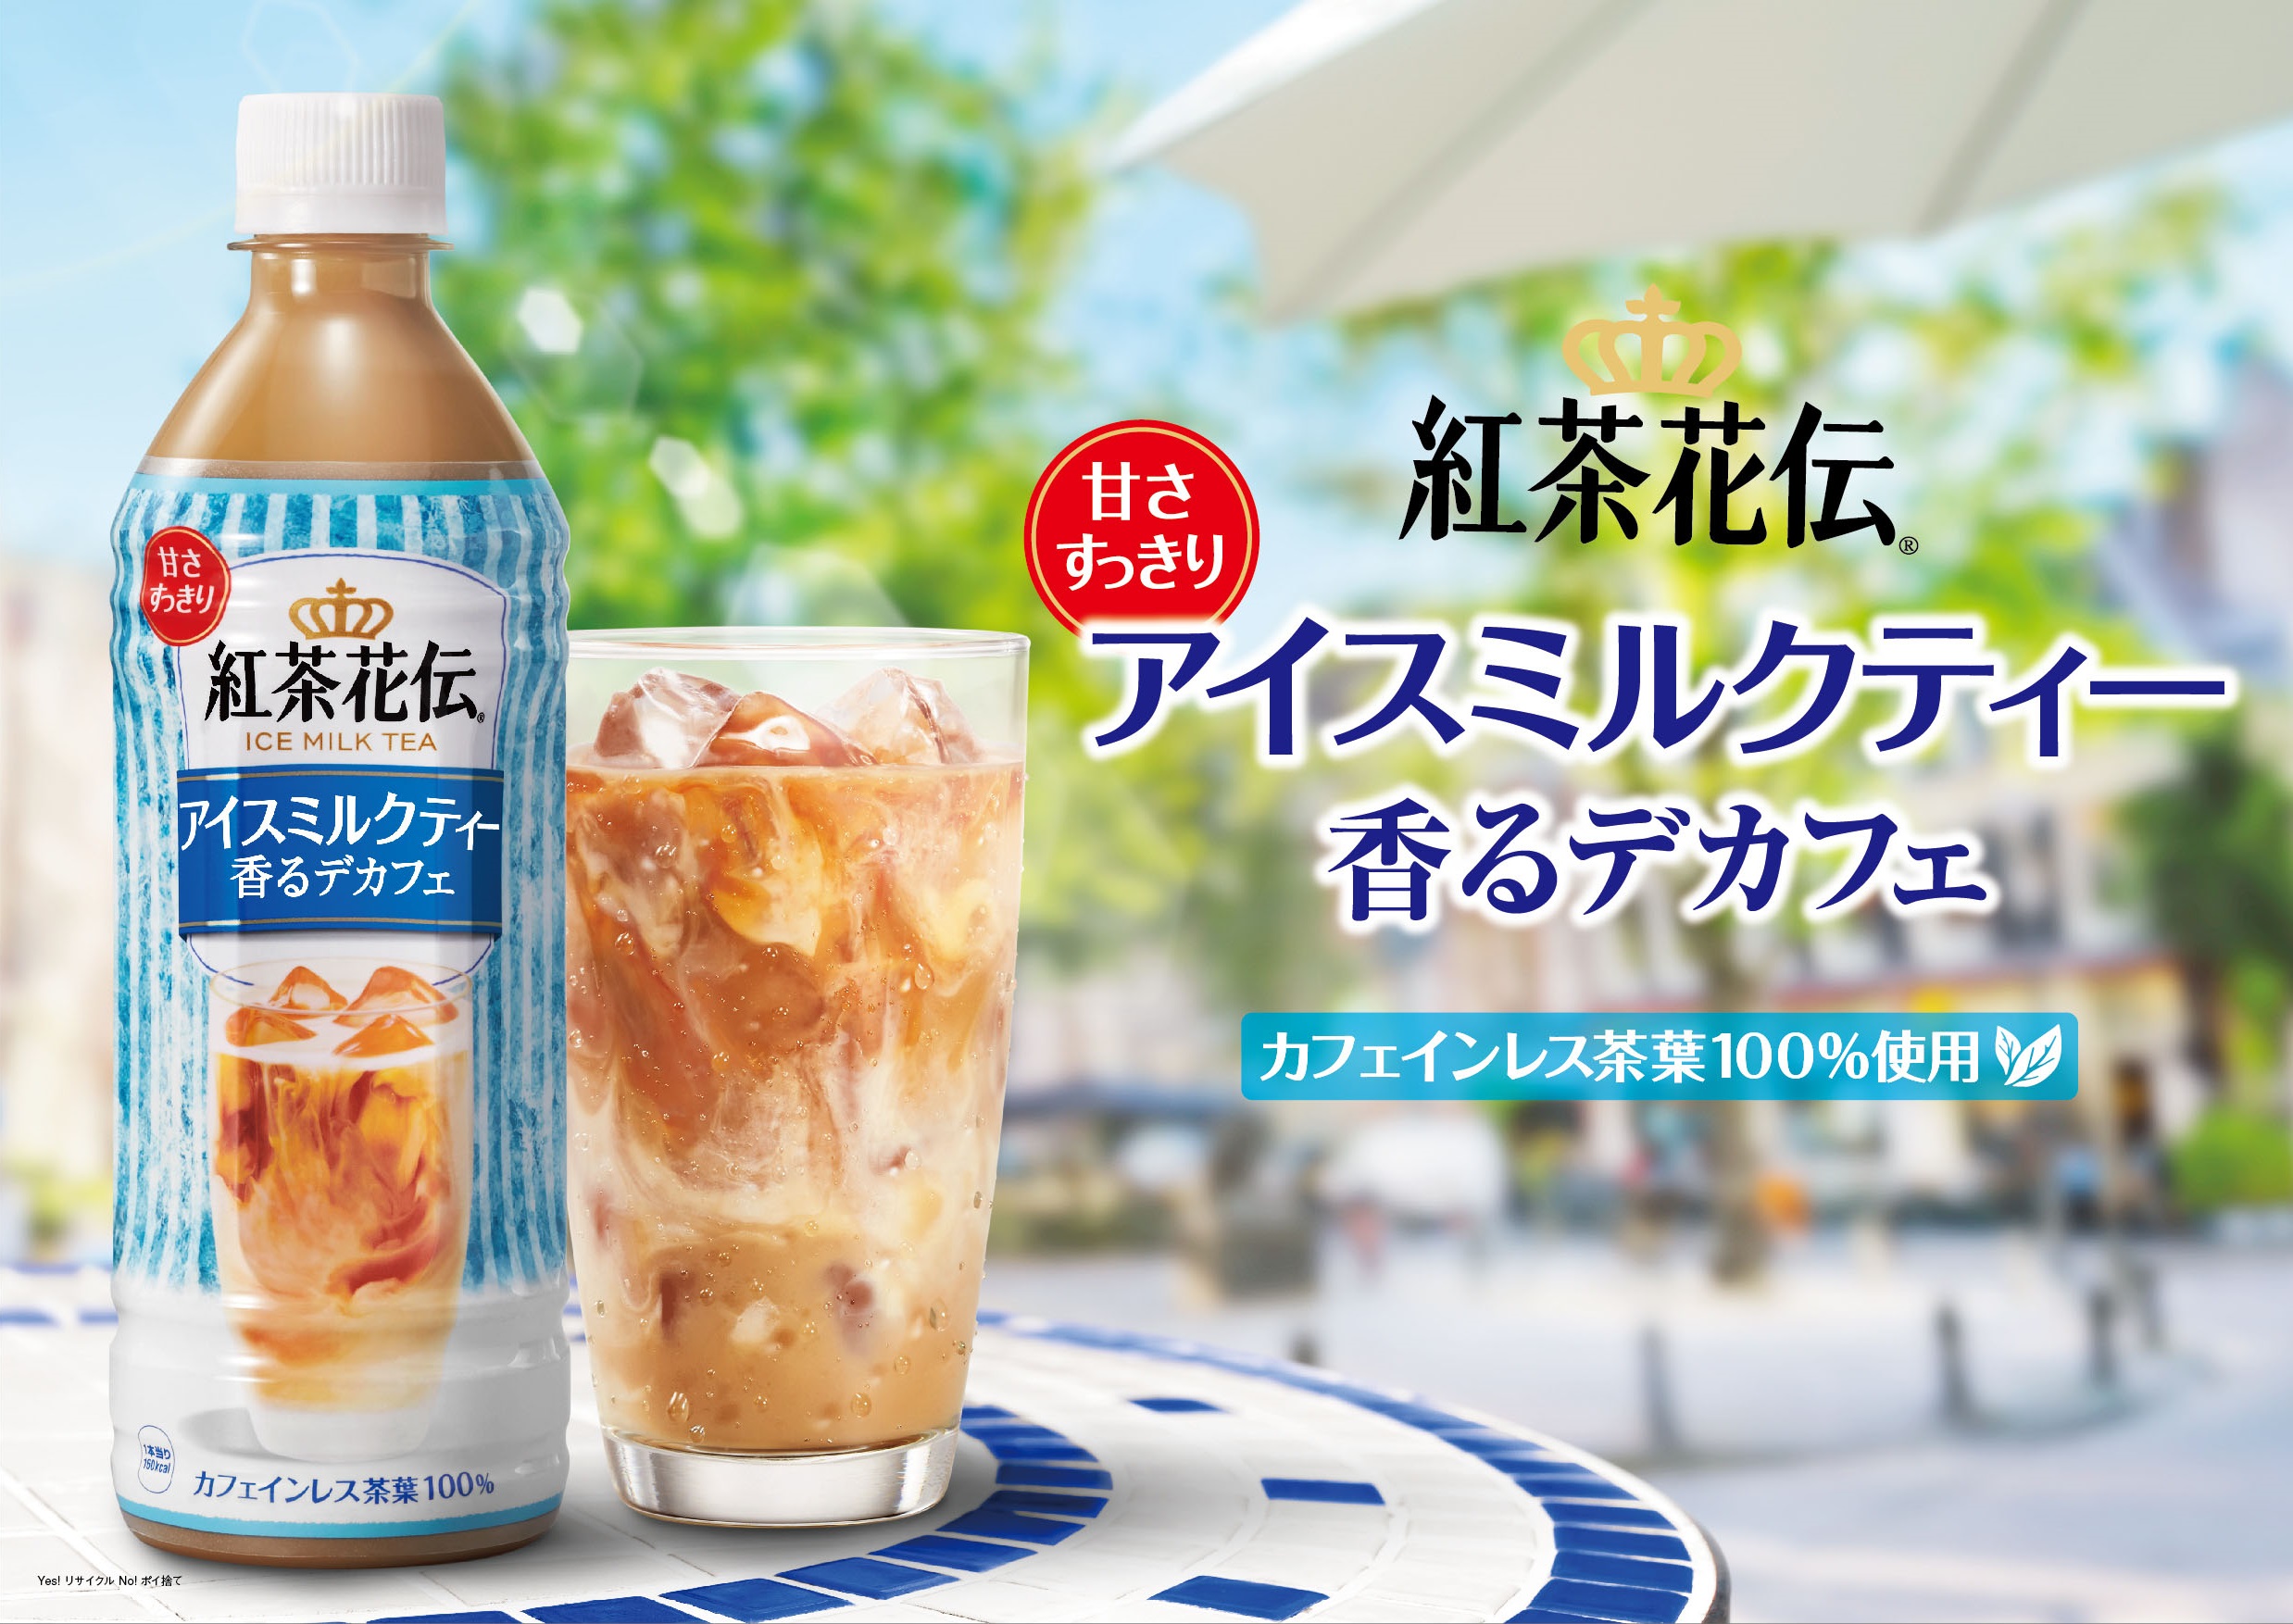 カフェインレス茶葉100 使用 甘さすっきりでごくごく飲める 紅茶花伝 アイスミルクティー 香るデカフェ 5月28日 月 から全国で新発売 日本コカ コーラ株式会社のプレスリリース